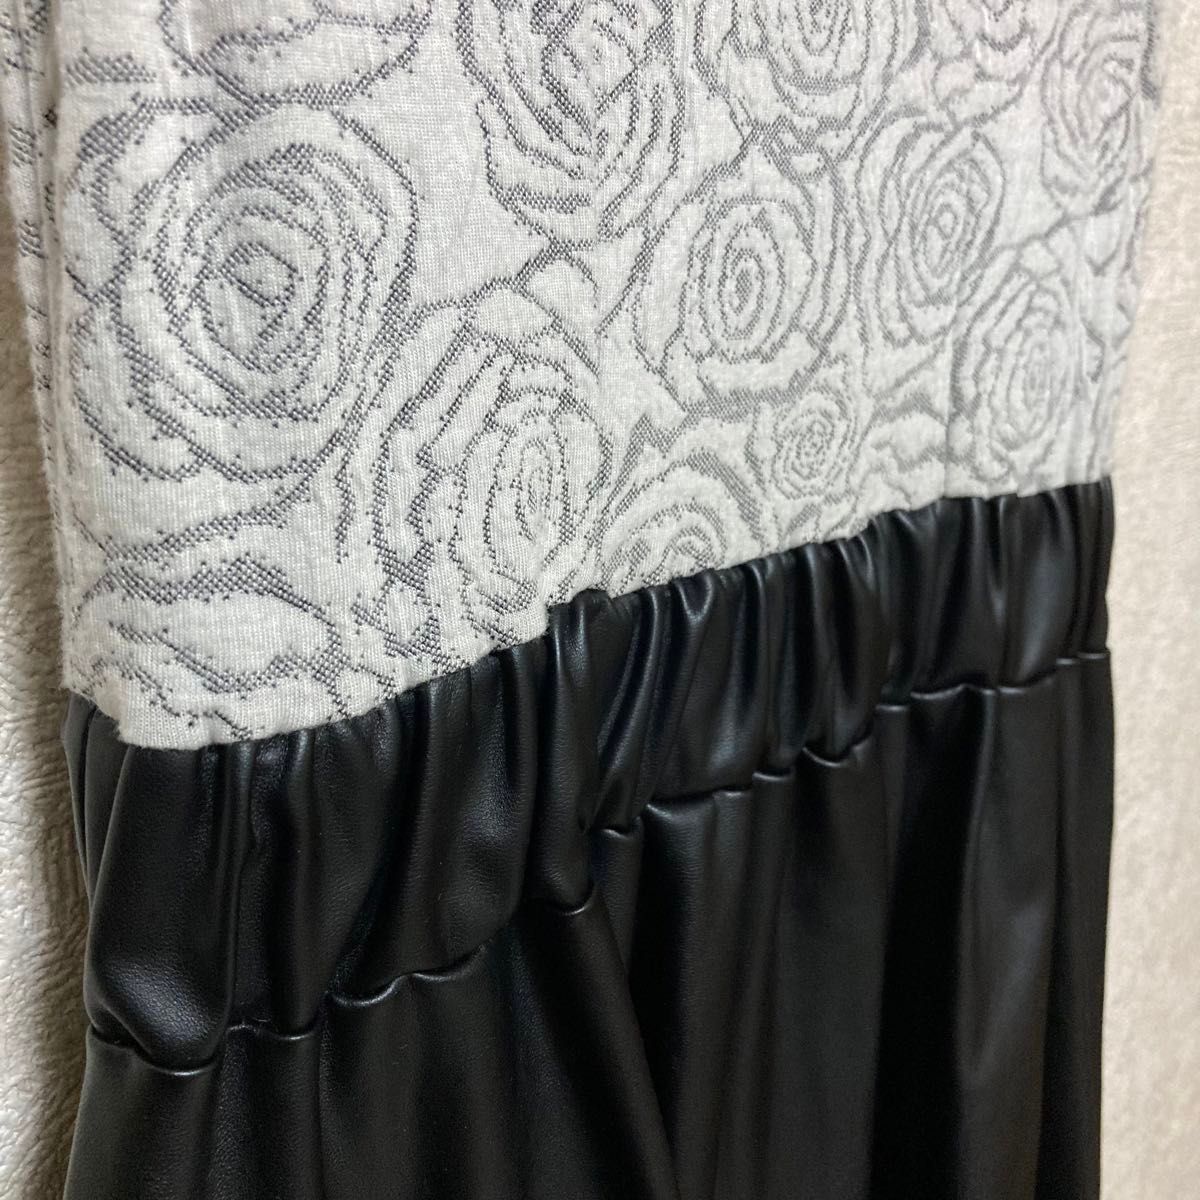 レディース ワンピース フォーマル フェイクレザースカート ドレス パーティードレス ノースリーブ 黒 フレア